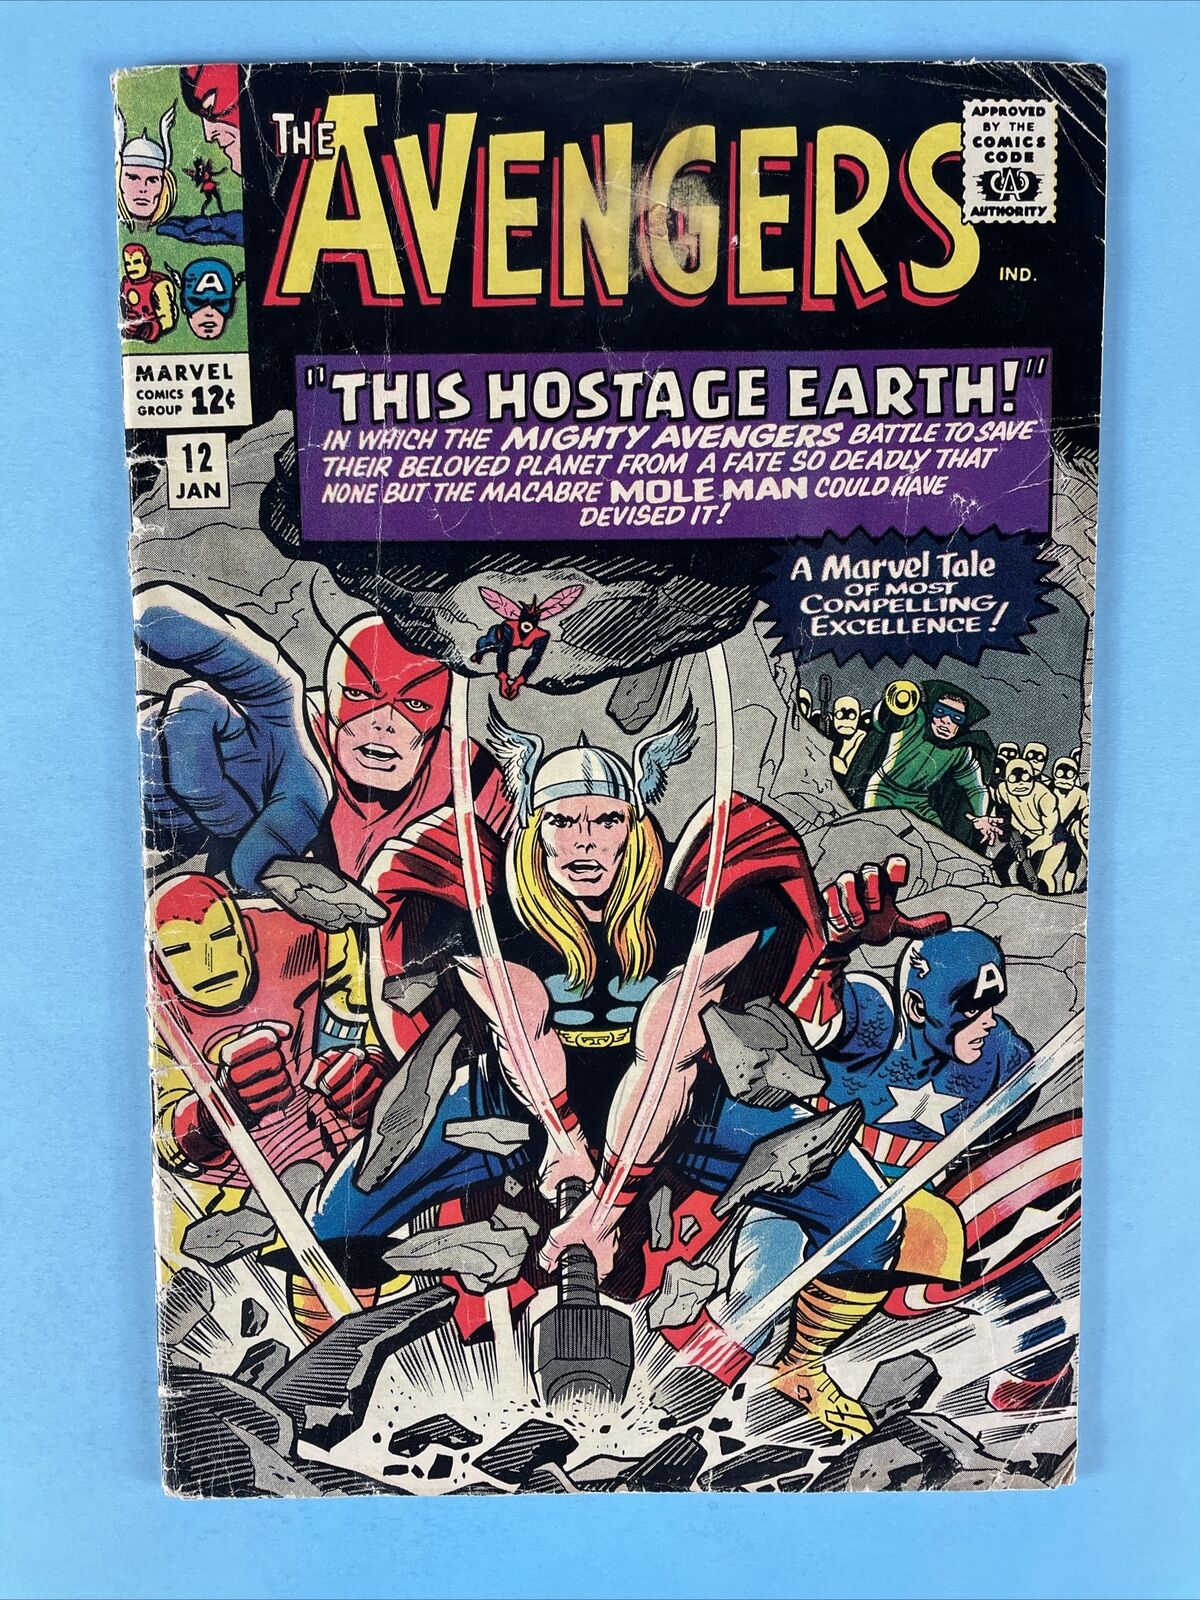 Avengers #12 (Fan letter George R.R. Martin)